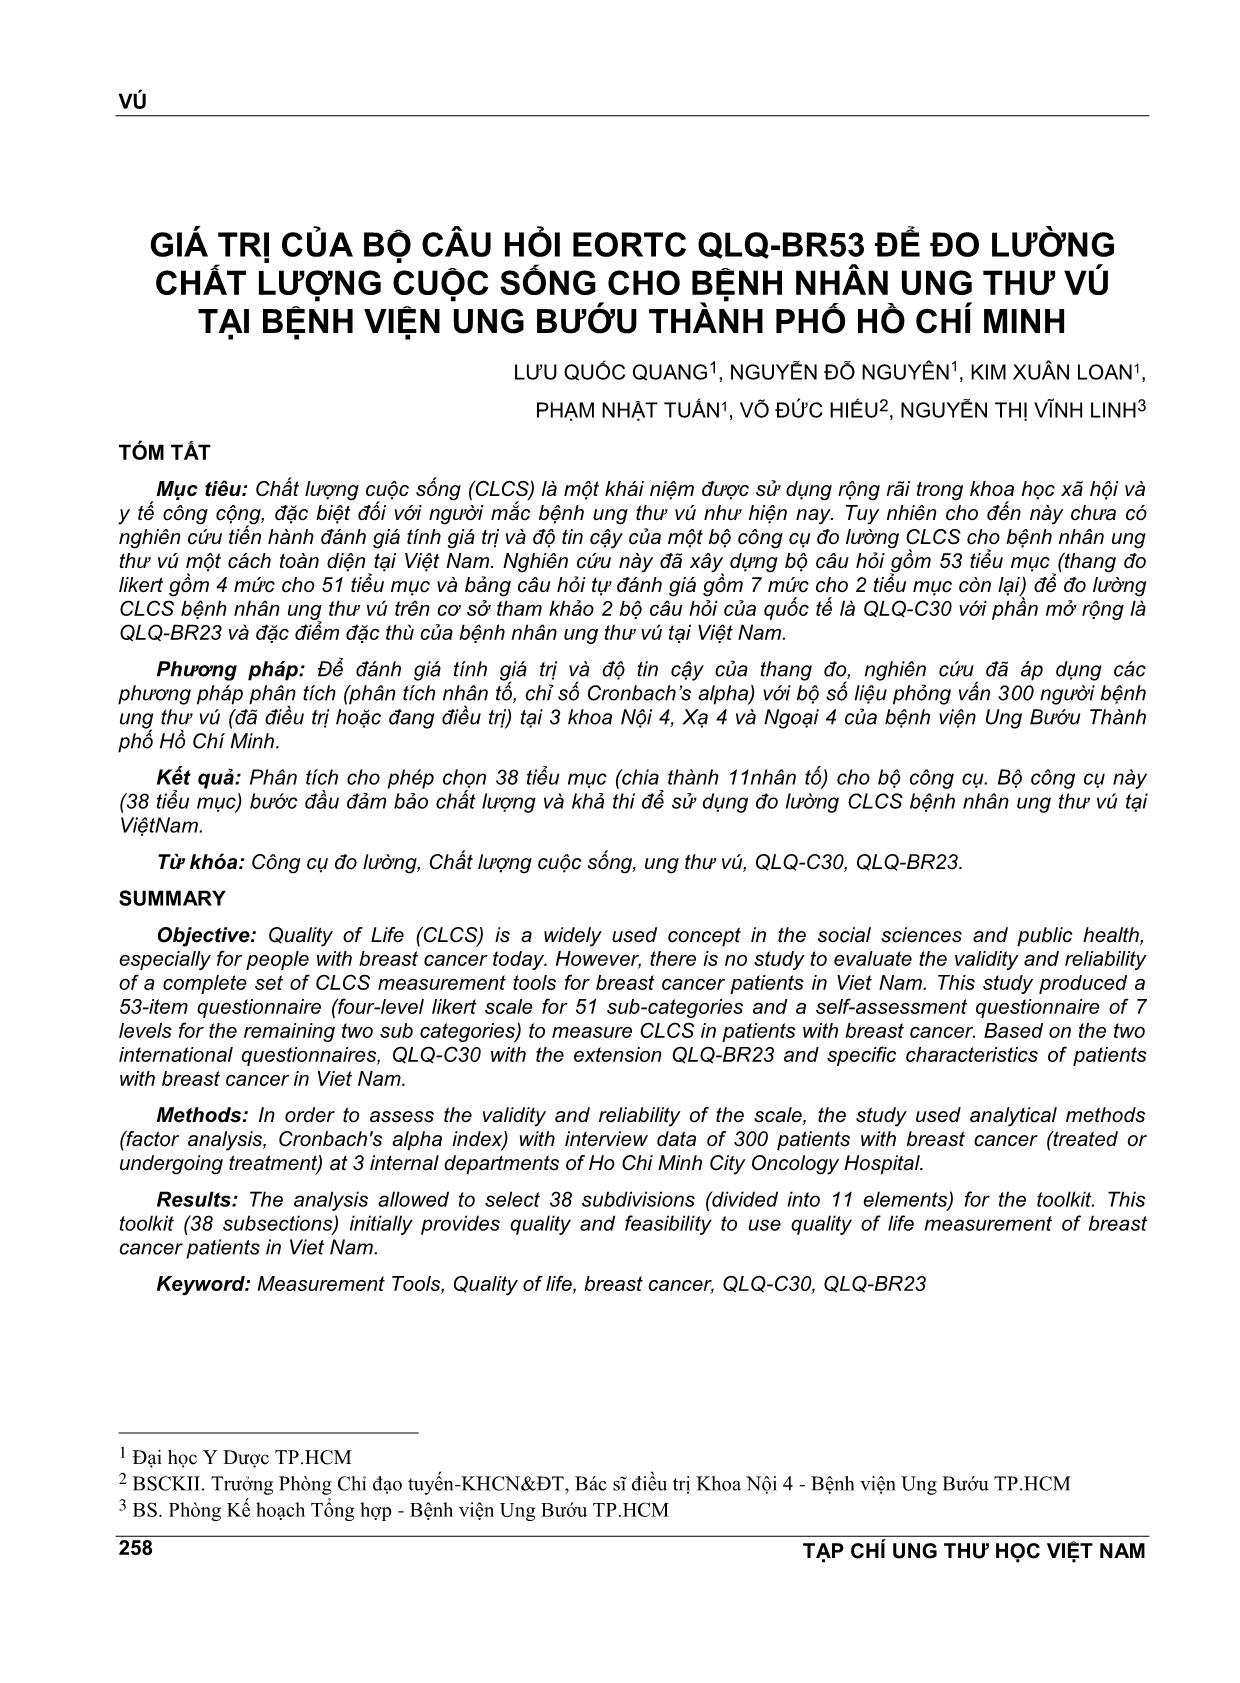 Giá trị của bộ câu hỏi eortc qlq - Br53 để đo lường chất lượng cuộc sống cho bệnh nhân ung thư vú tại bệnh viện ung bướu thành phố Hồ Chí Minh trang 1